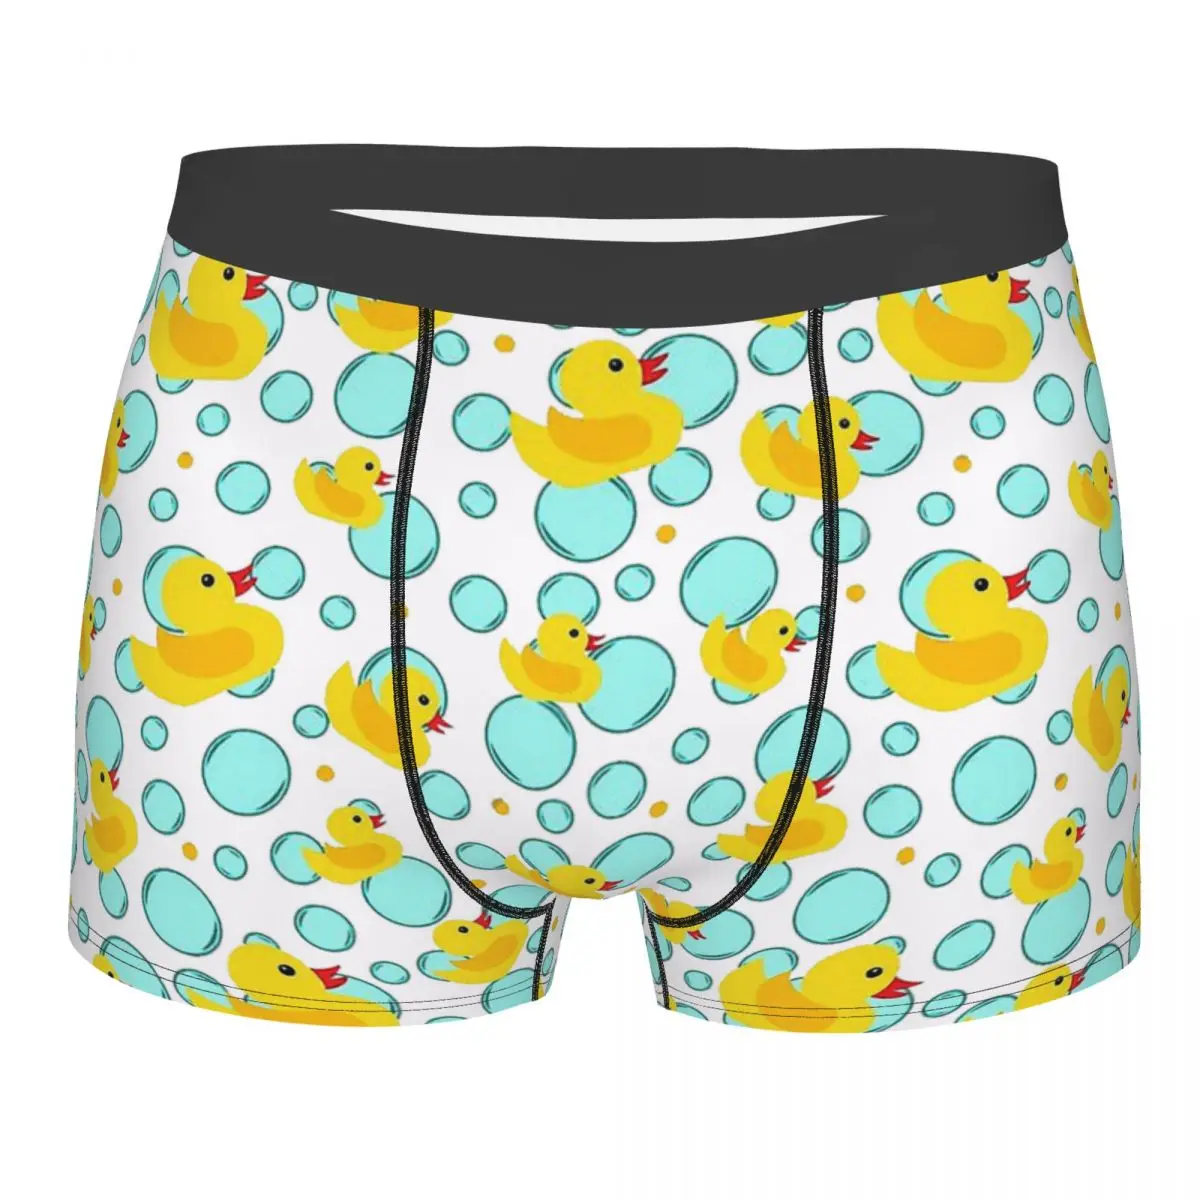 

Yellow Rubber Ducks Bubbles Bathtime Rubber Duck Bath Toy Yellow Cute Underpants Homme Panties Man Underwear Shorts Boxer Briefs